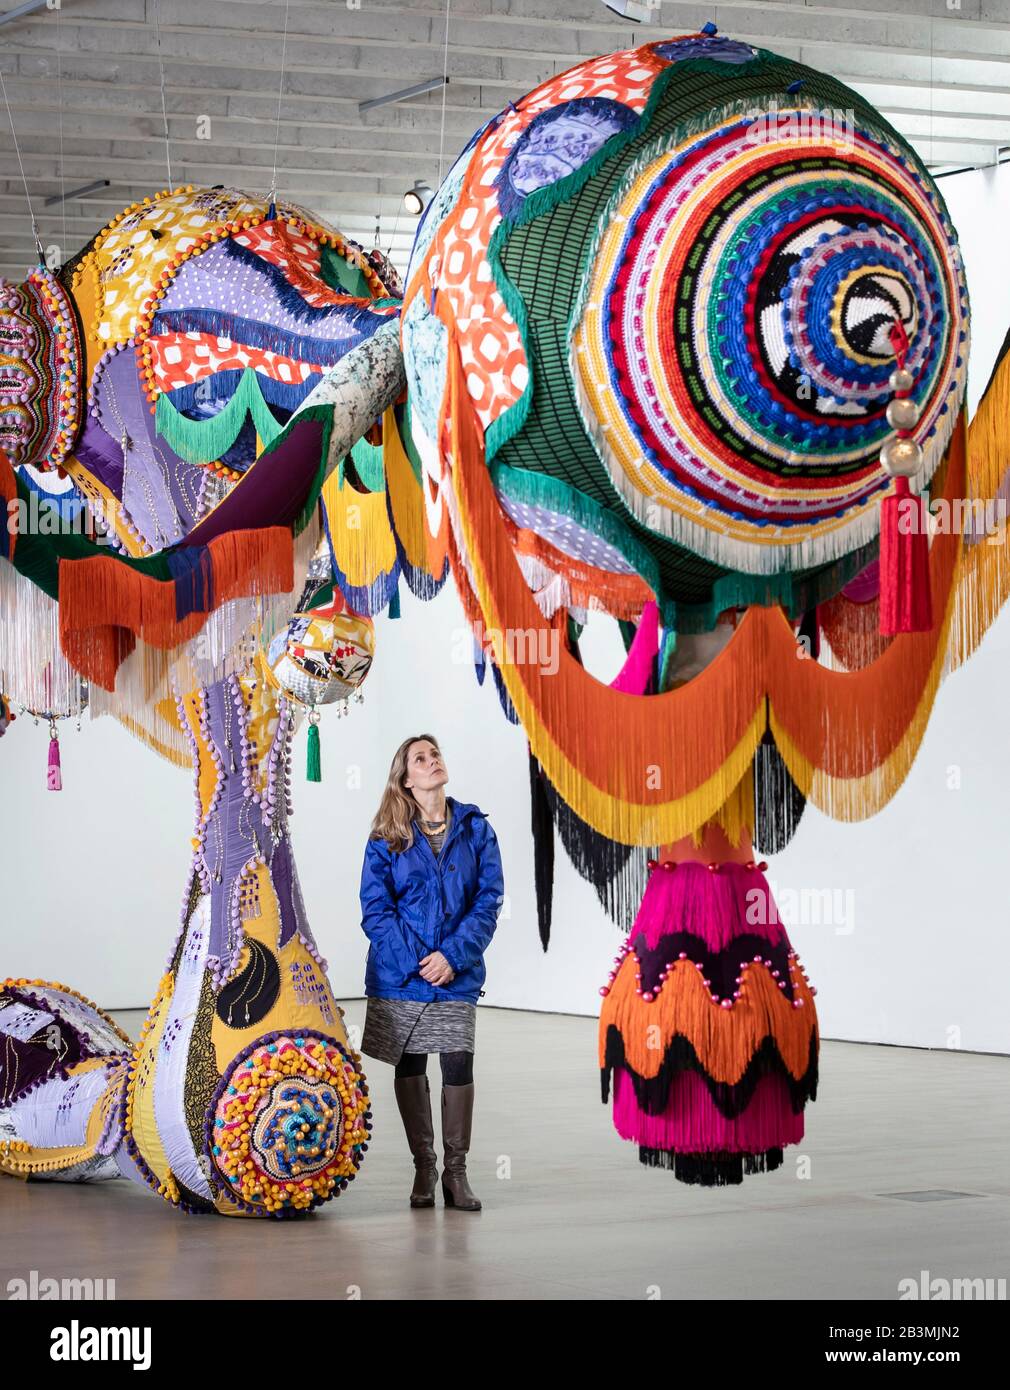 Rachel Jarvis, employée de la galerie, voit une œuvre intitulée Valkyrie Marina Rinaldi, 2014, par l'artiste Joana Vasconcelos, qui fait partie de sa plus grande exposition britannique à ce jour, Au-Delà, au Yorkshire Sculpture Park. Banque D'Images